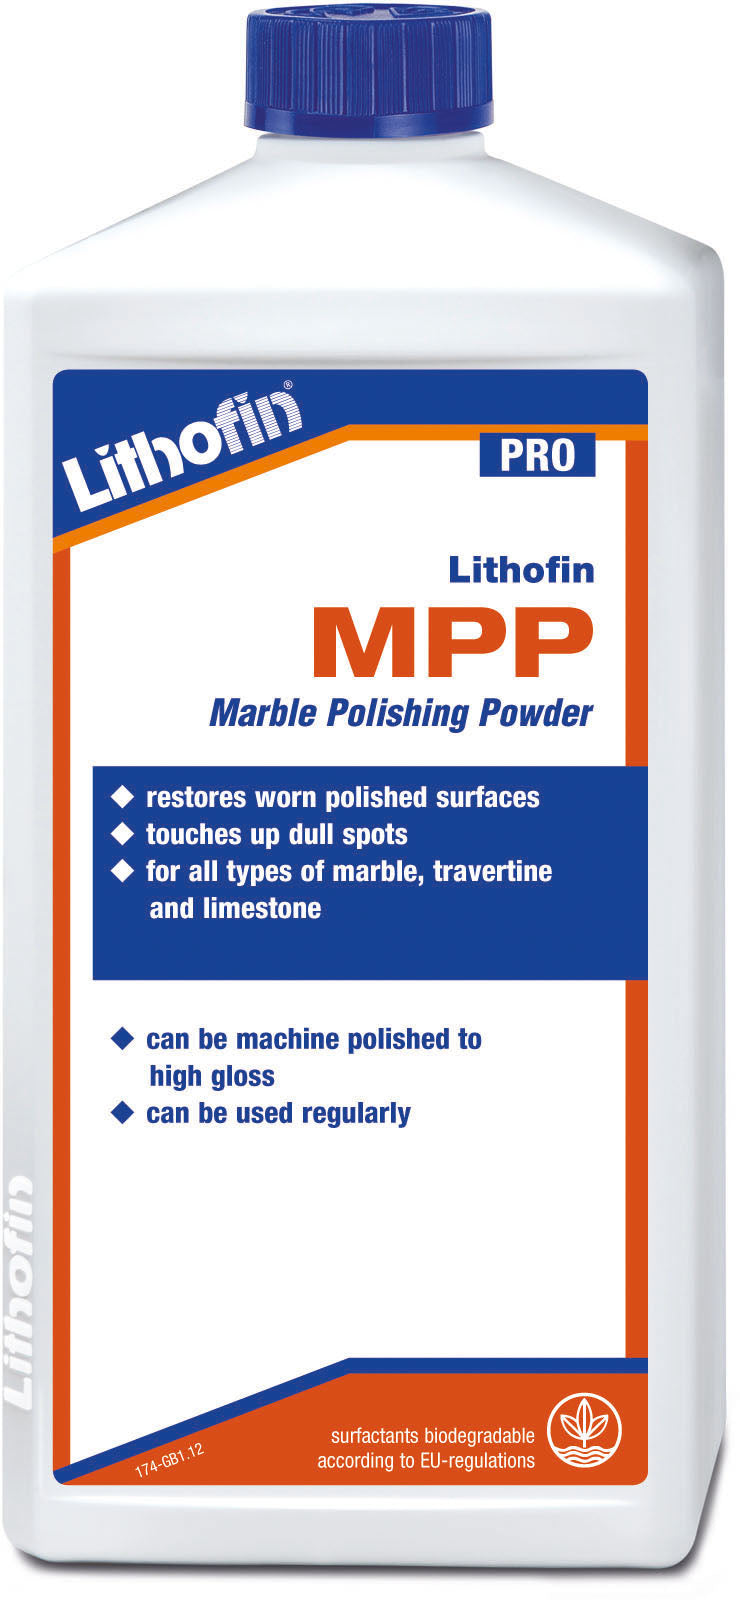 Lithofin mpp marble polishing powder 